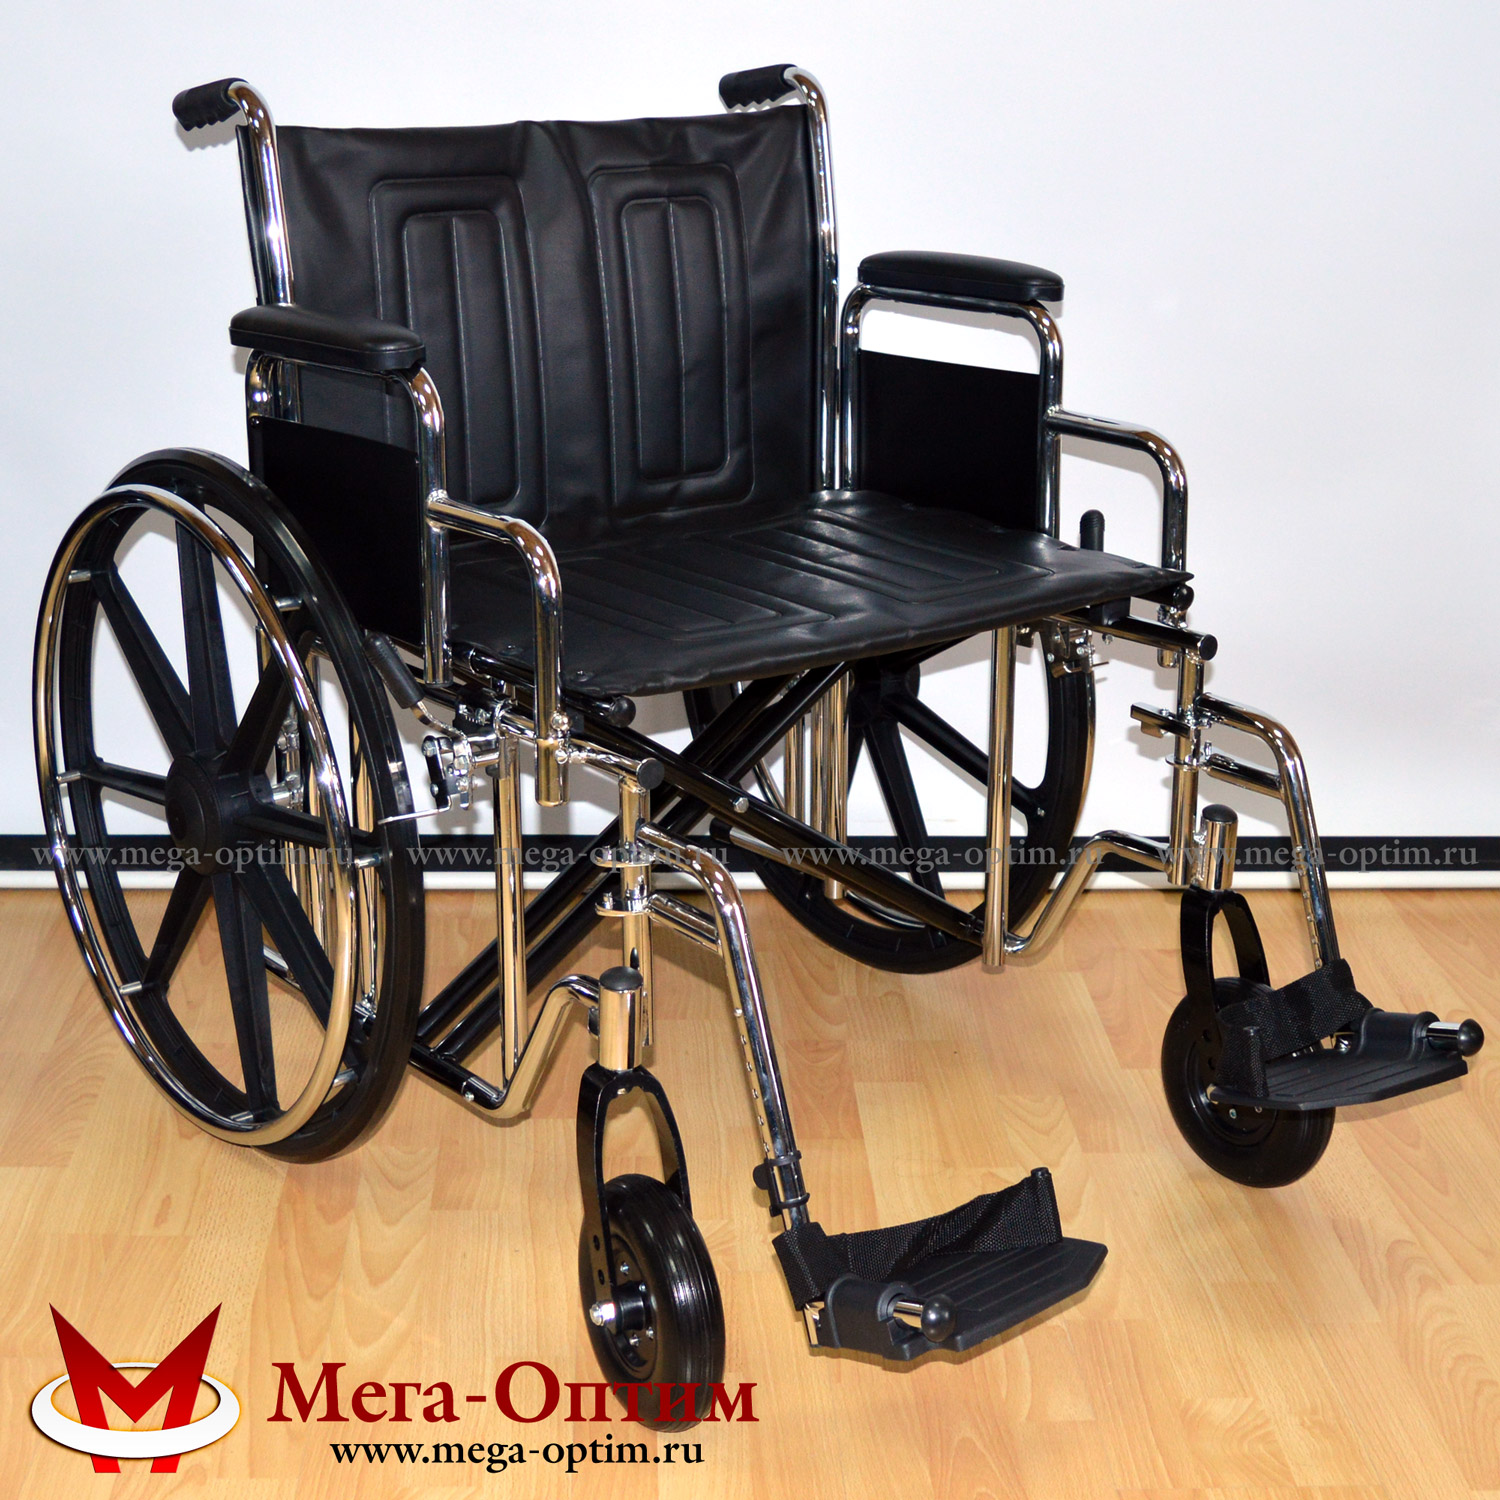 Инвалидная коляска повышенной грузоподъемности 711AE МЕГА-ОПТИМ